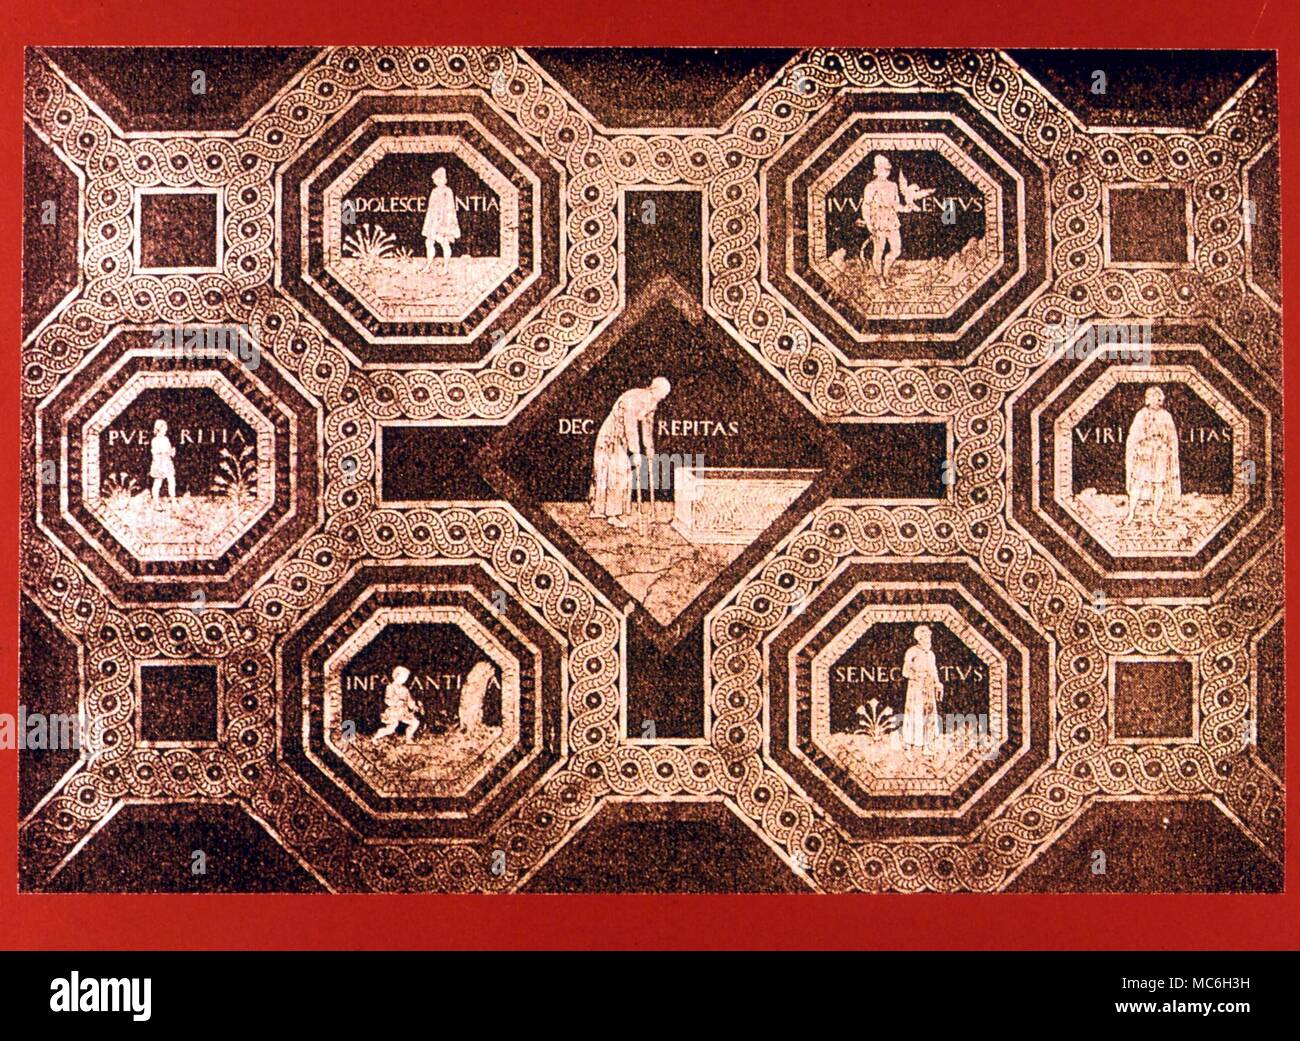 Imágenes de las siete edades del hombre, desde la acera anteriormente en la Catedral de Siena - después de una impresión (mezzotint?). Diseñado por Antonio Federighi Foto de stock